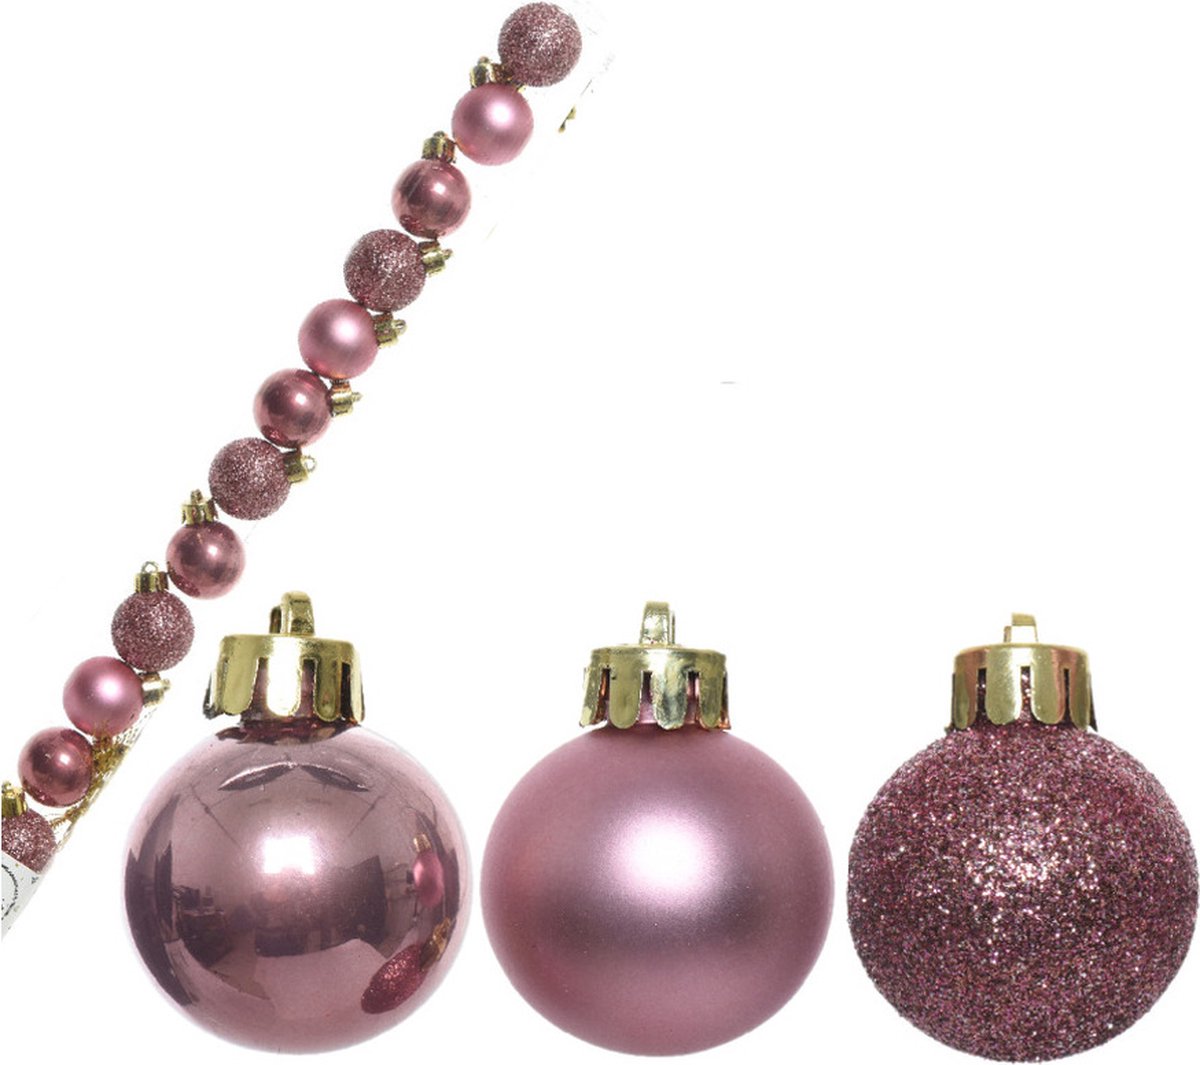 14x stuks onbreekbare kunststof kerstballen velvet roze 3 cm - glans/mat/glitter - Kerstboomversiering